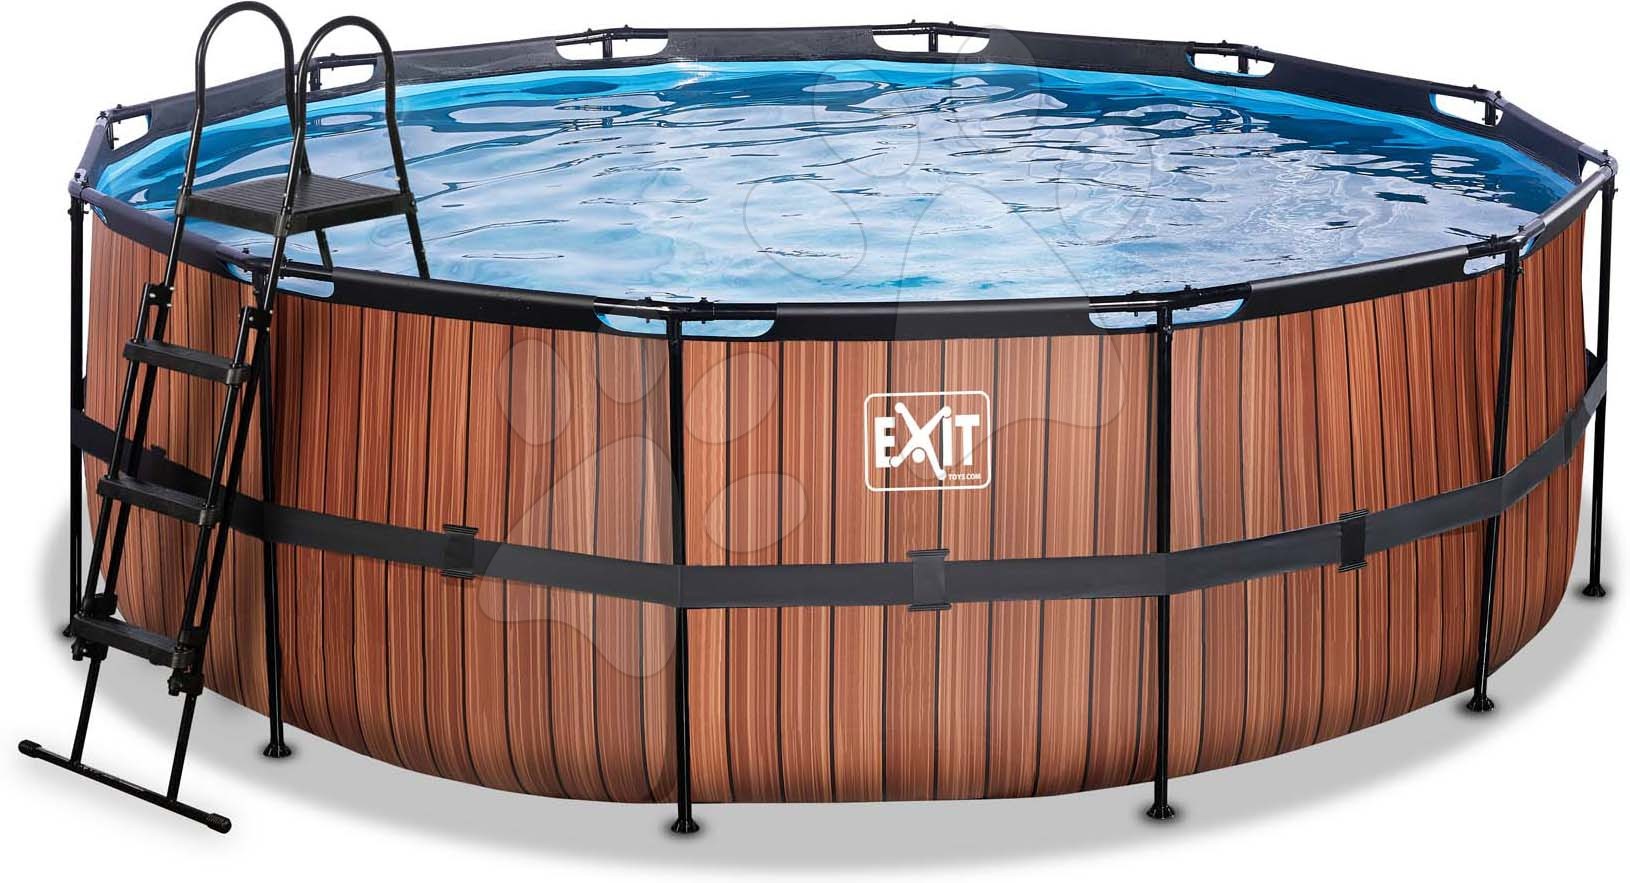 Medence homokszűrős vízforgatóval Wood pool Exit Toys kerek acél medencekeret 427*122 cm barna 6 évtől